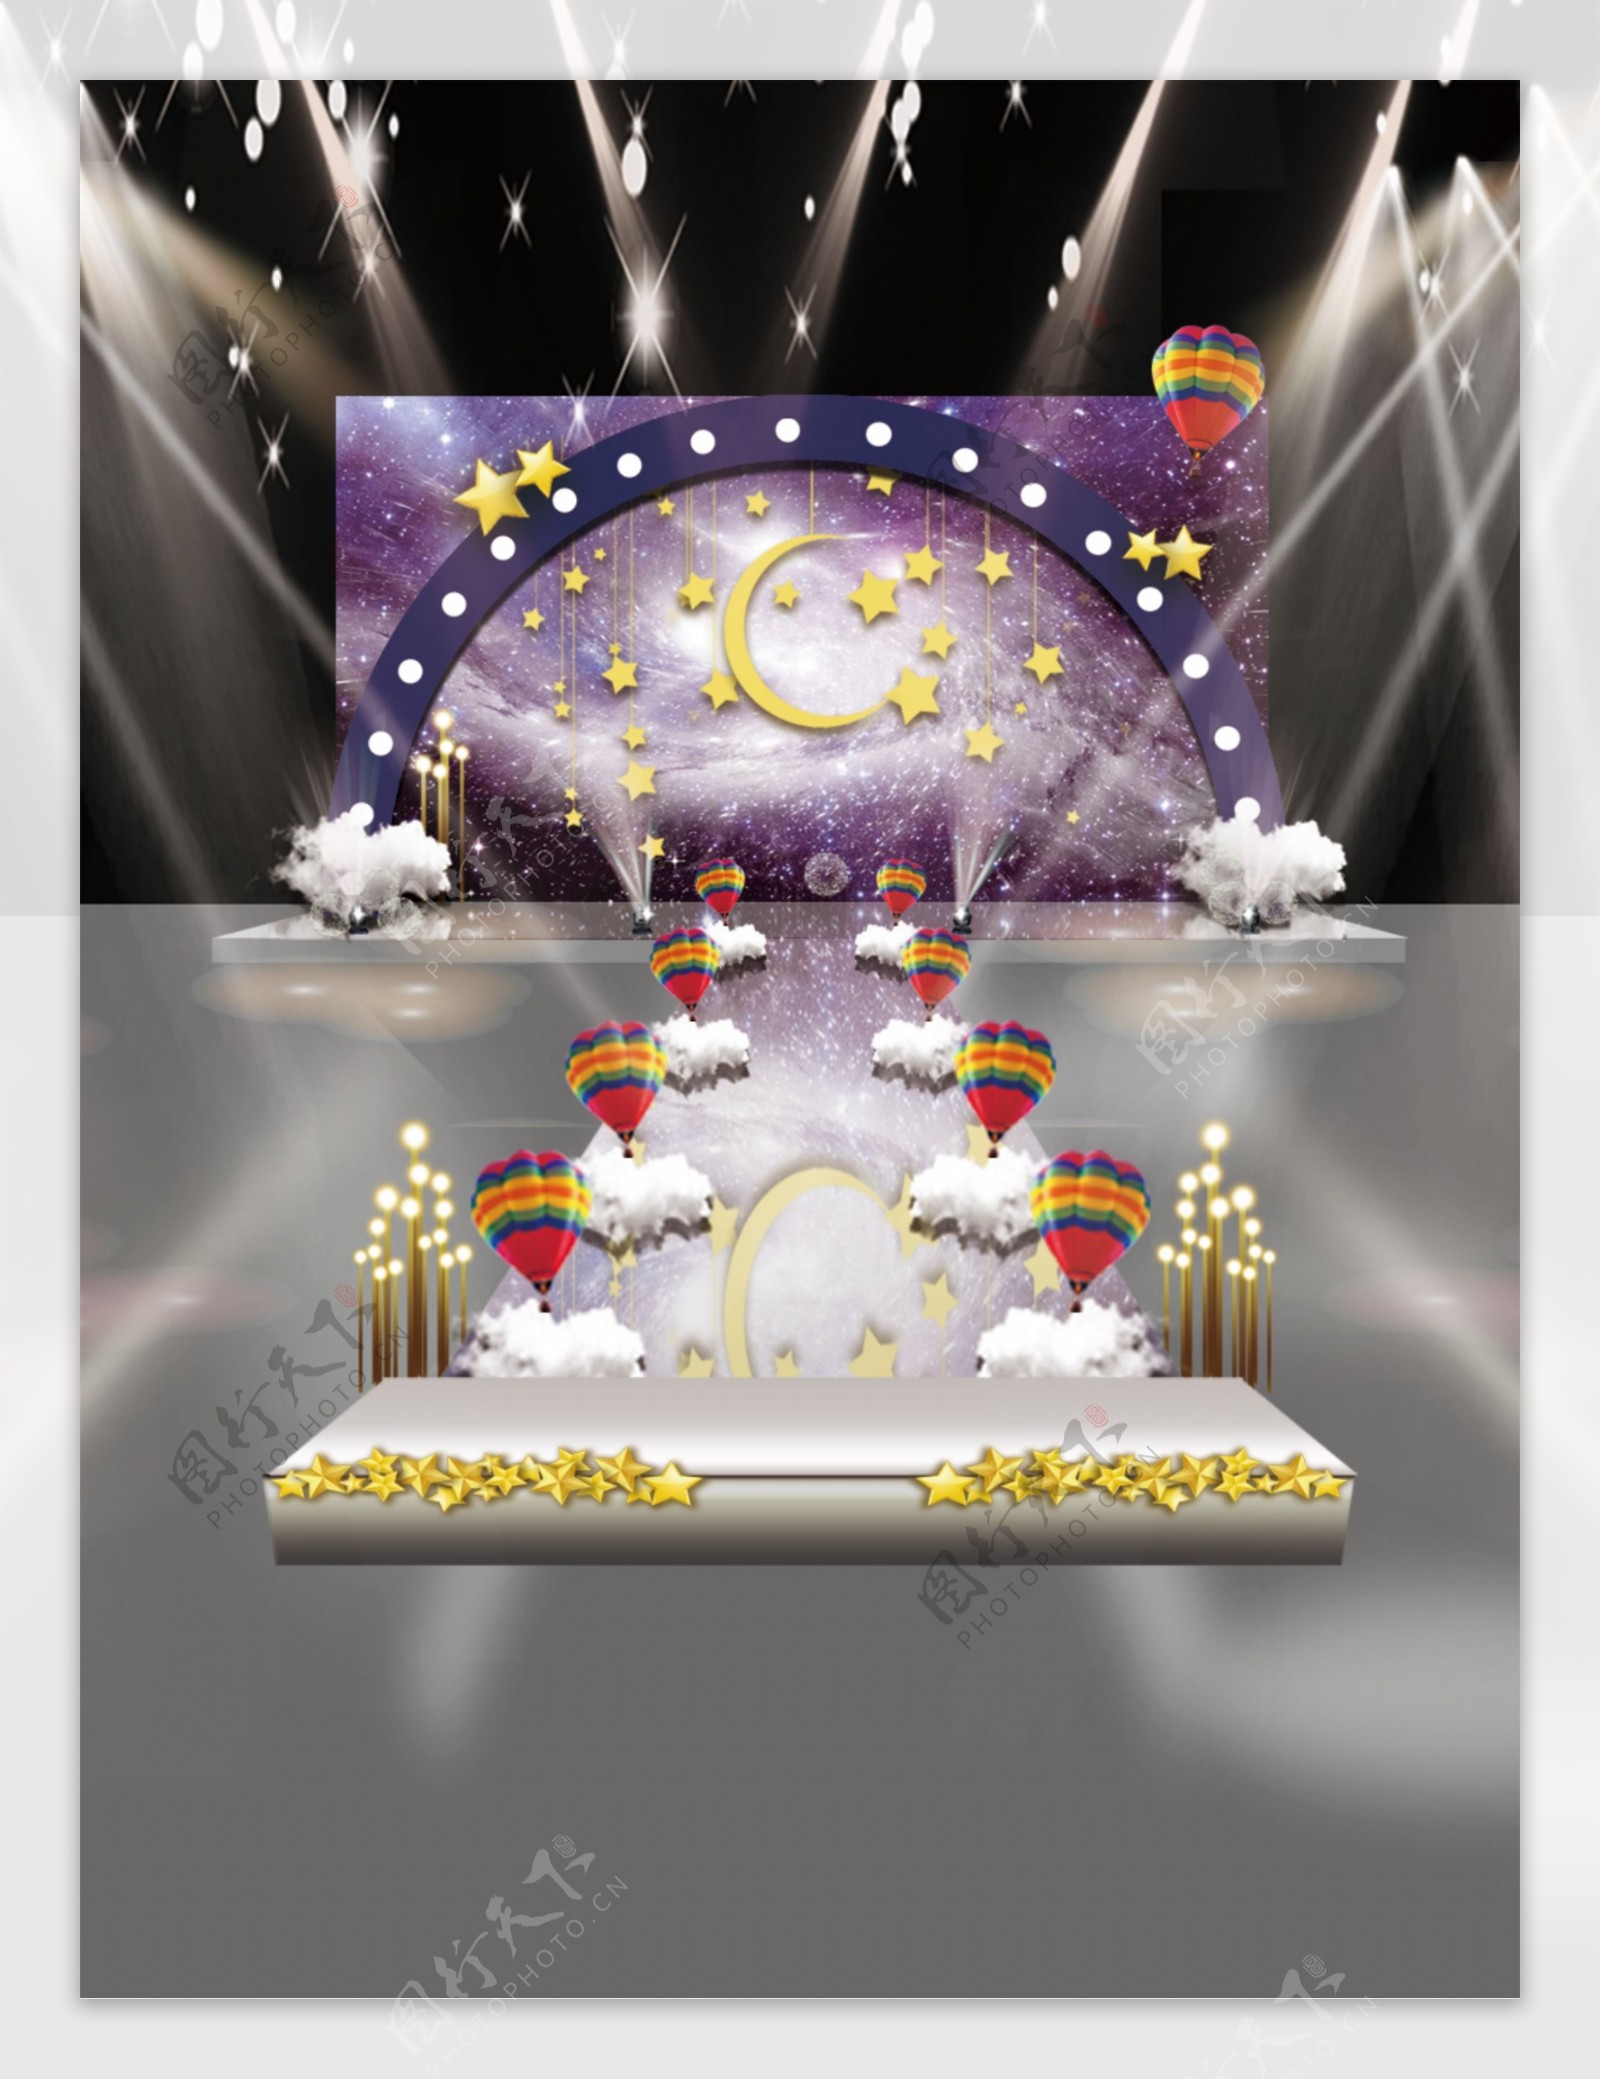 梦幻紫色云朵婚礼效果图设计